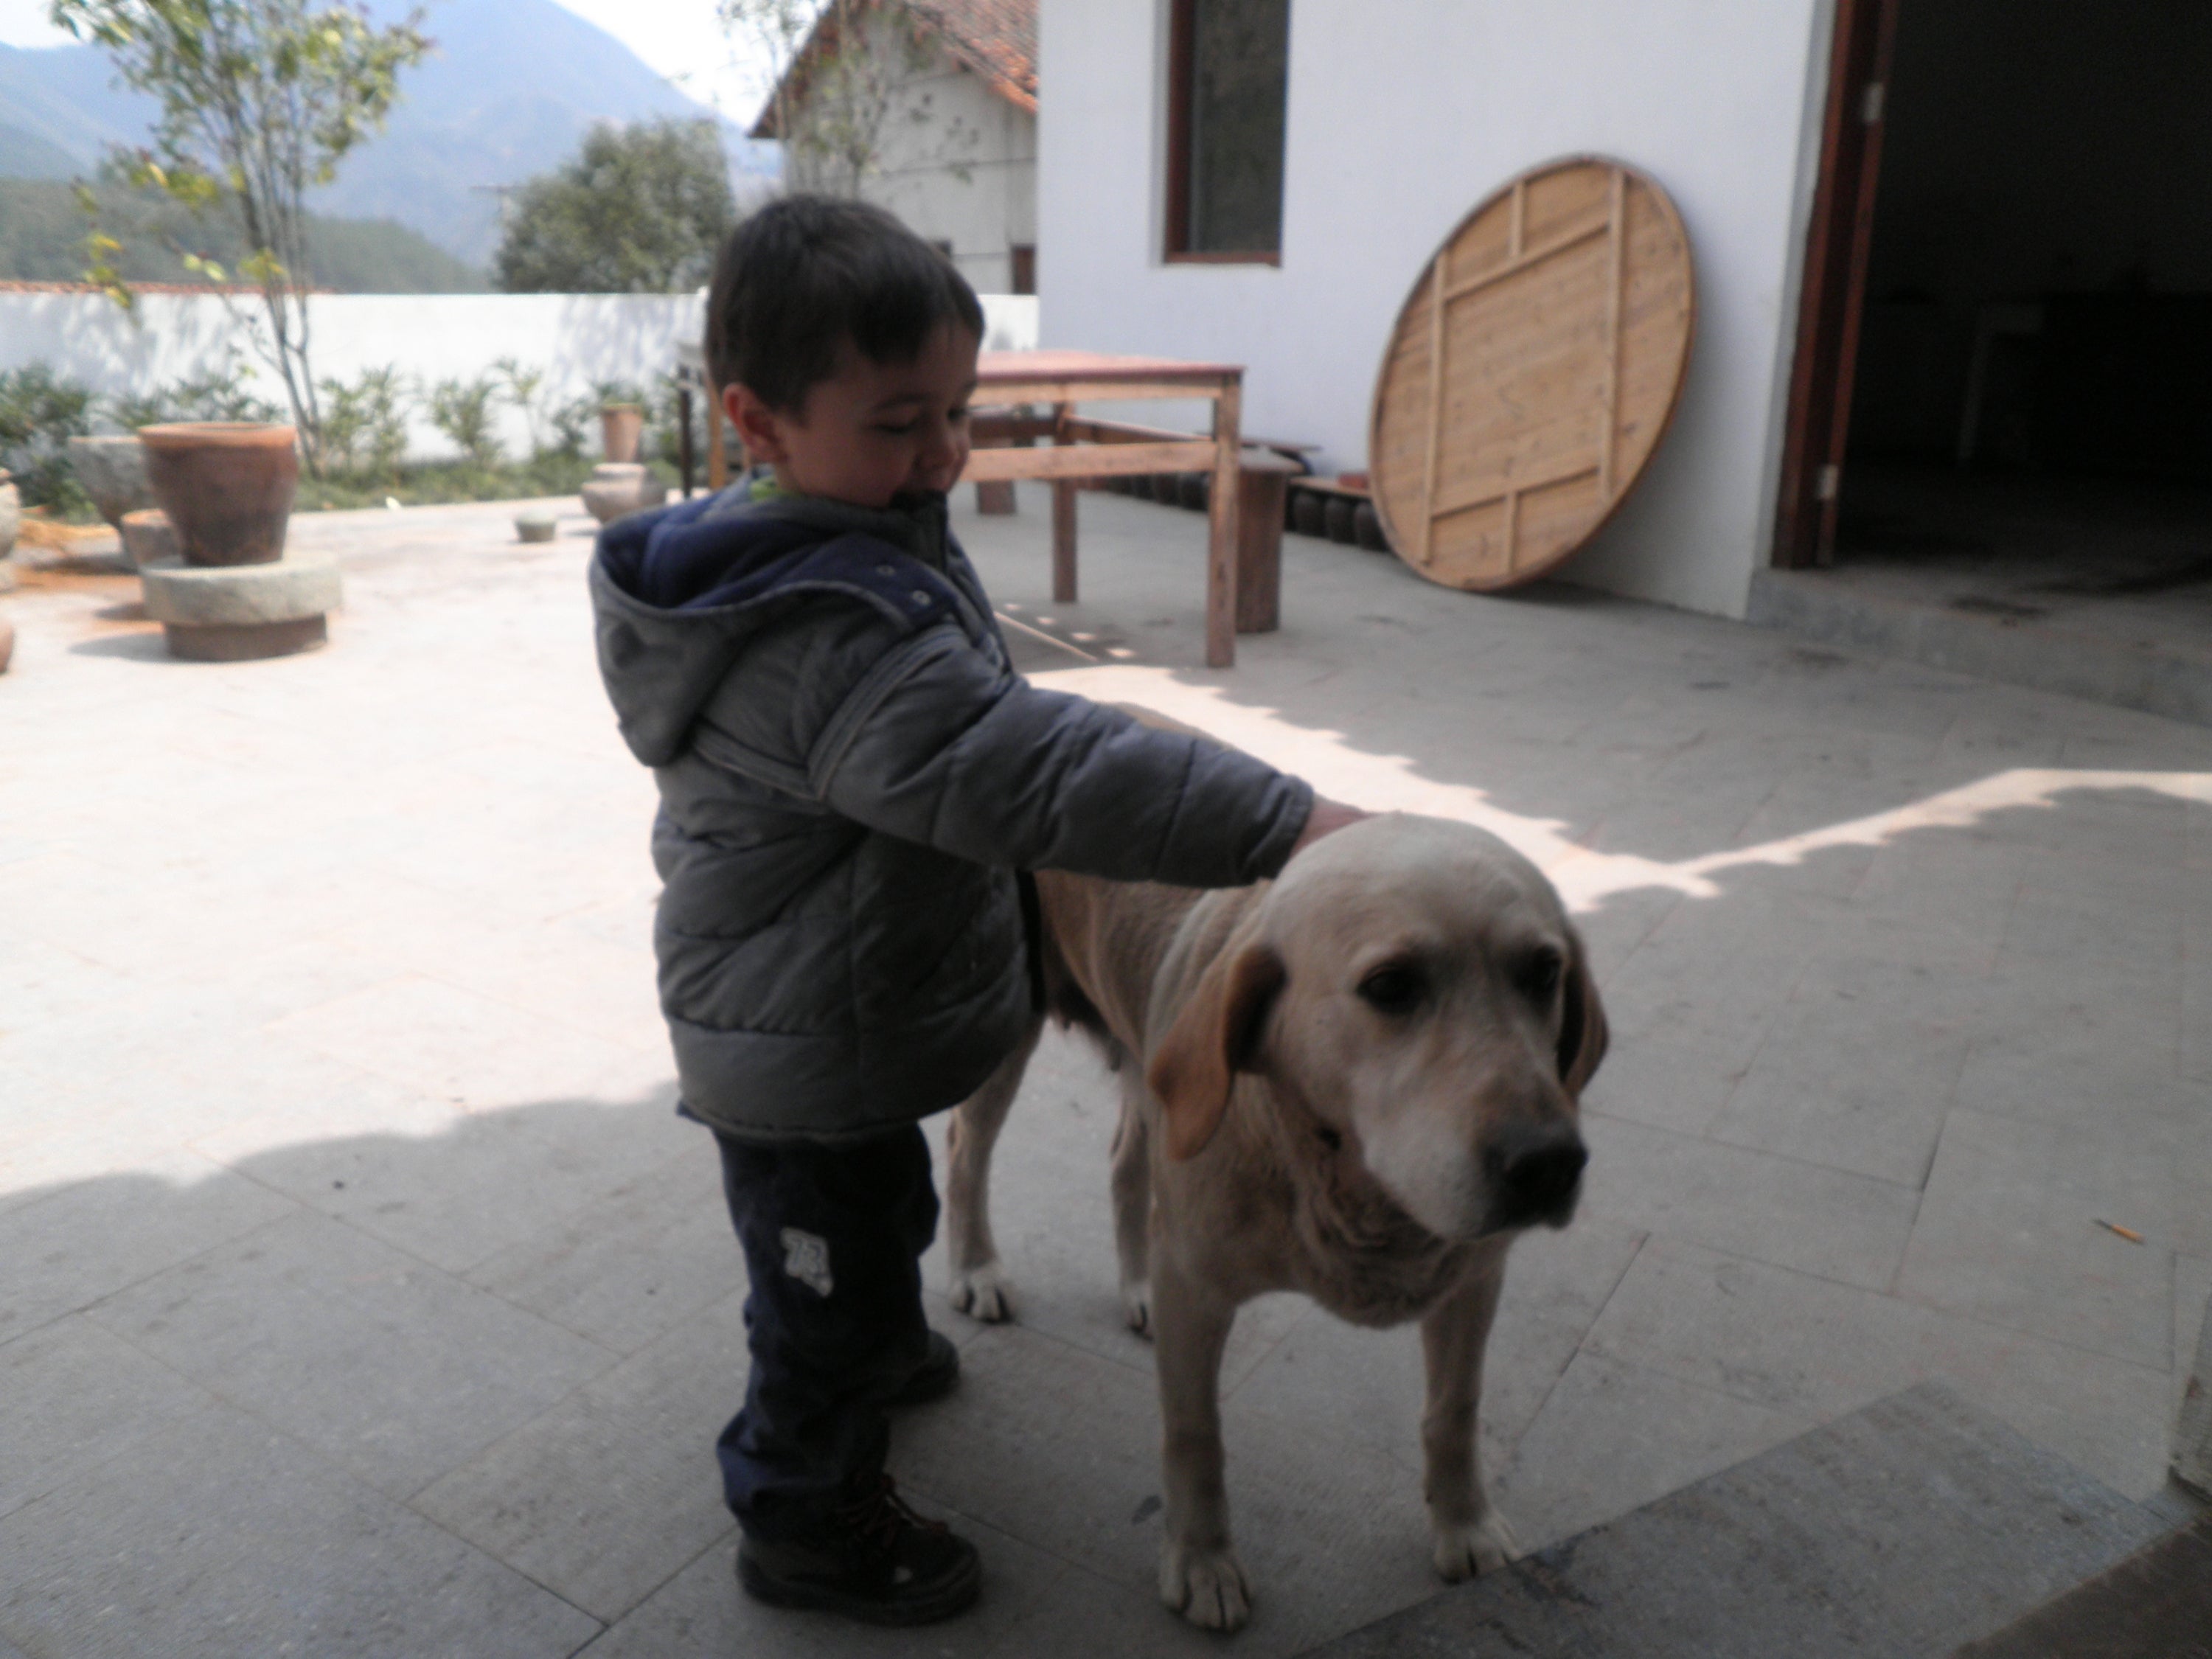 Boy petting a dog